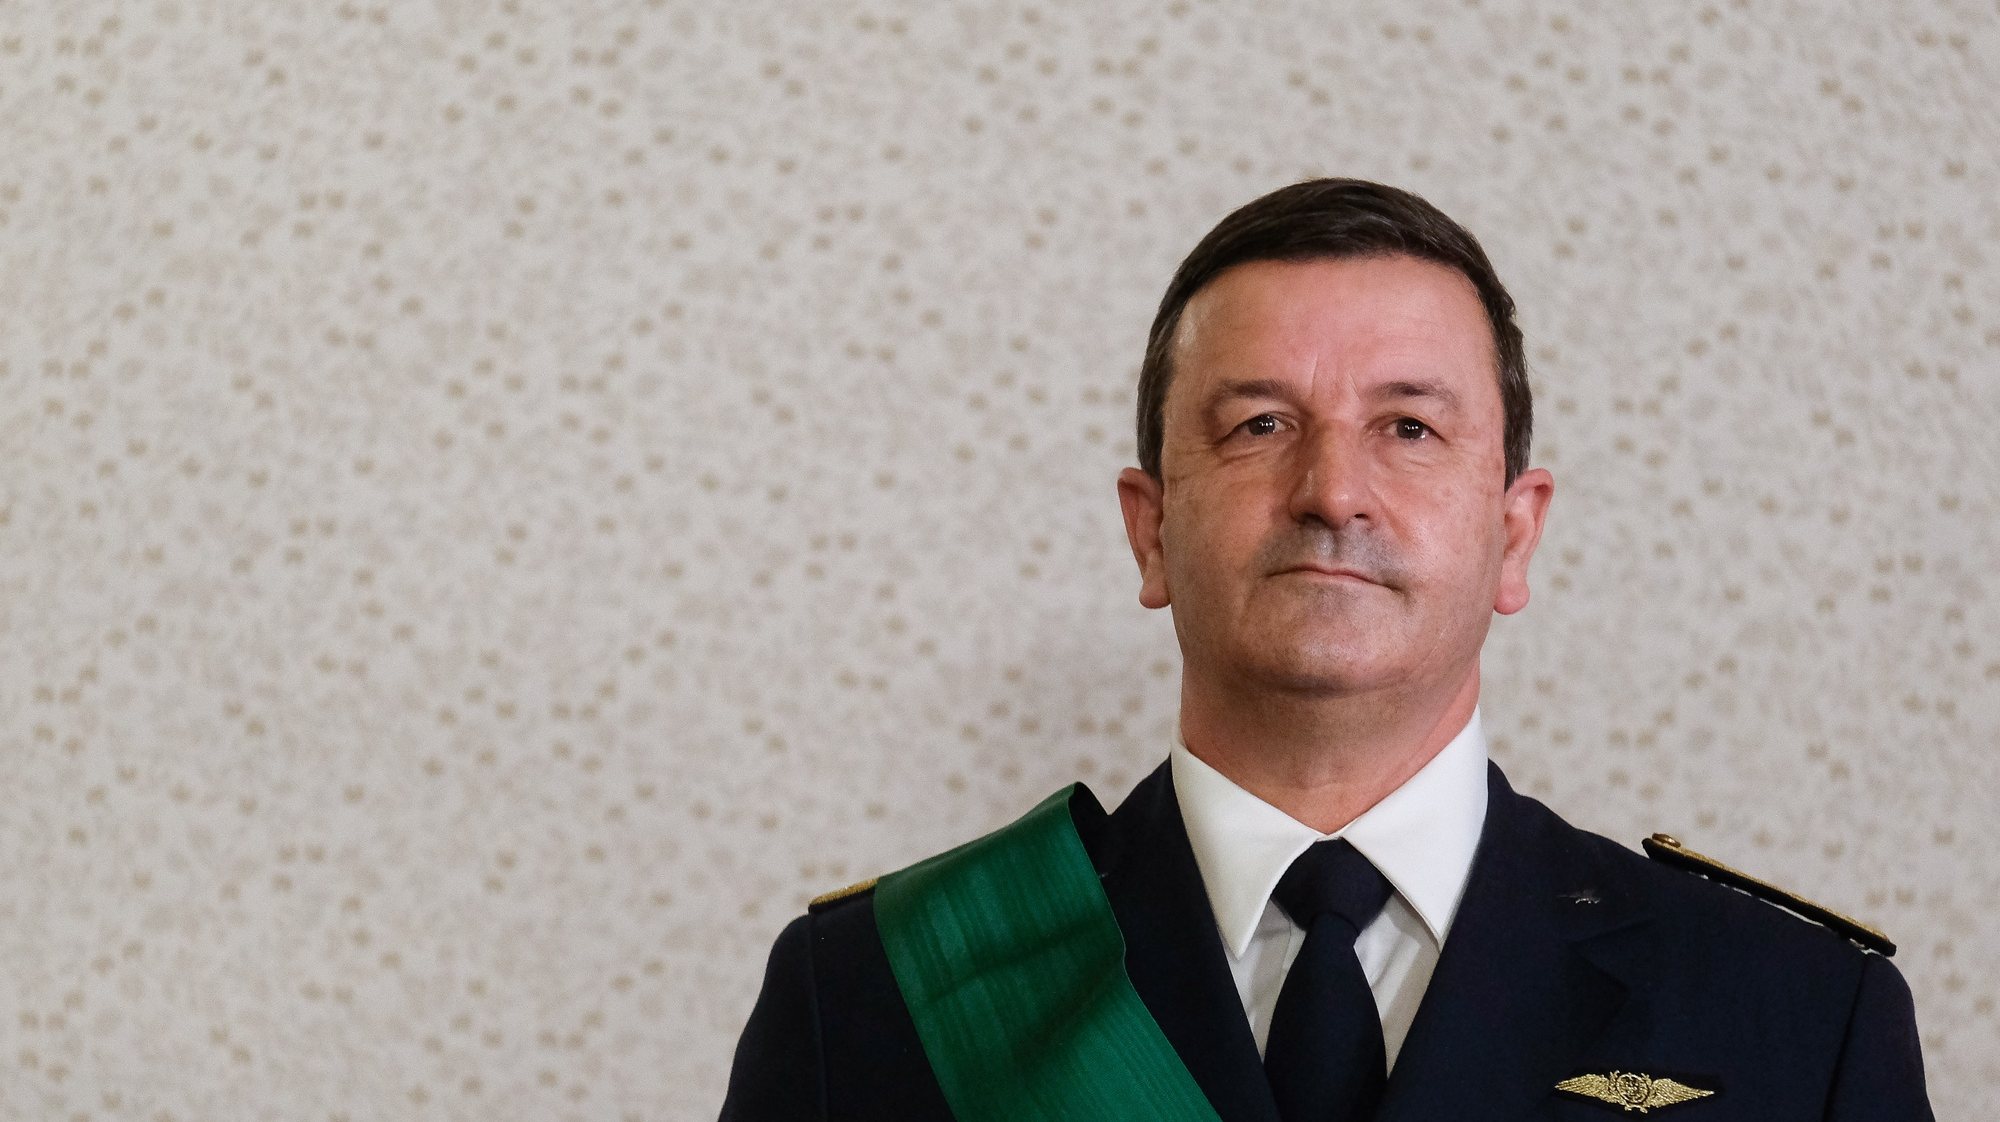 O novo Chefe de Estado Maior da Força Aérea (CEMFA), Cartaxo Alves, no final da cerimónia de tomada de posse no Palácio de Belém, em Lisboa, 25 de fevereiro de 2022.  MÁRIO CRUZ/LUSA